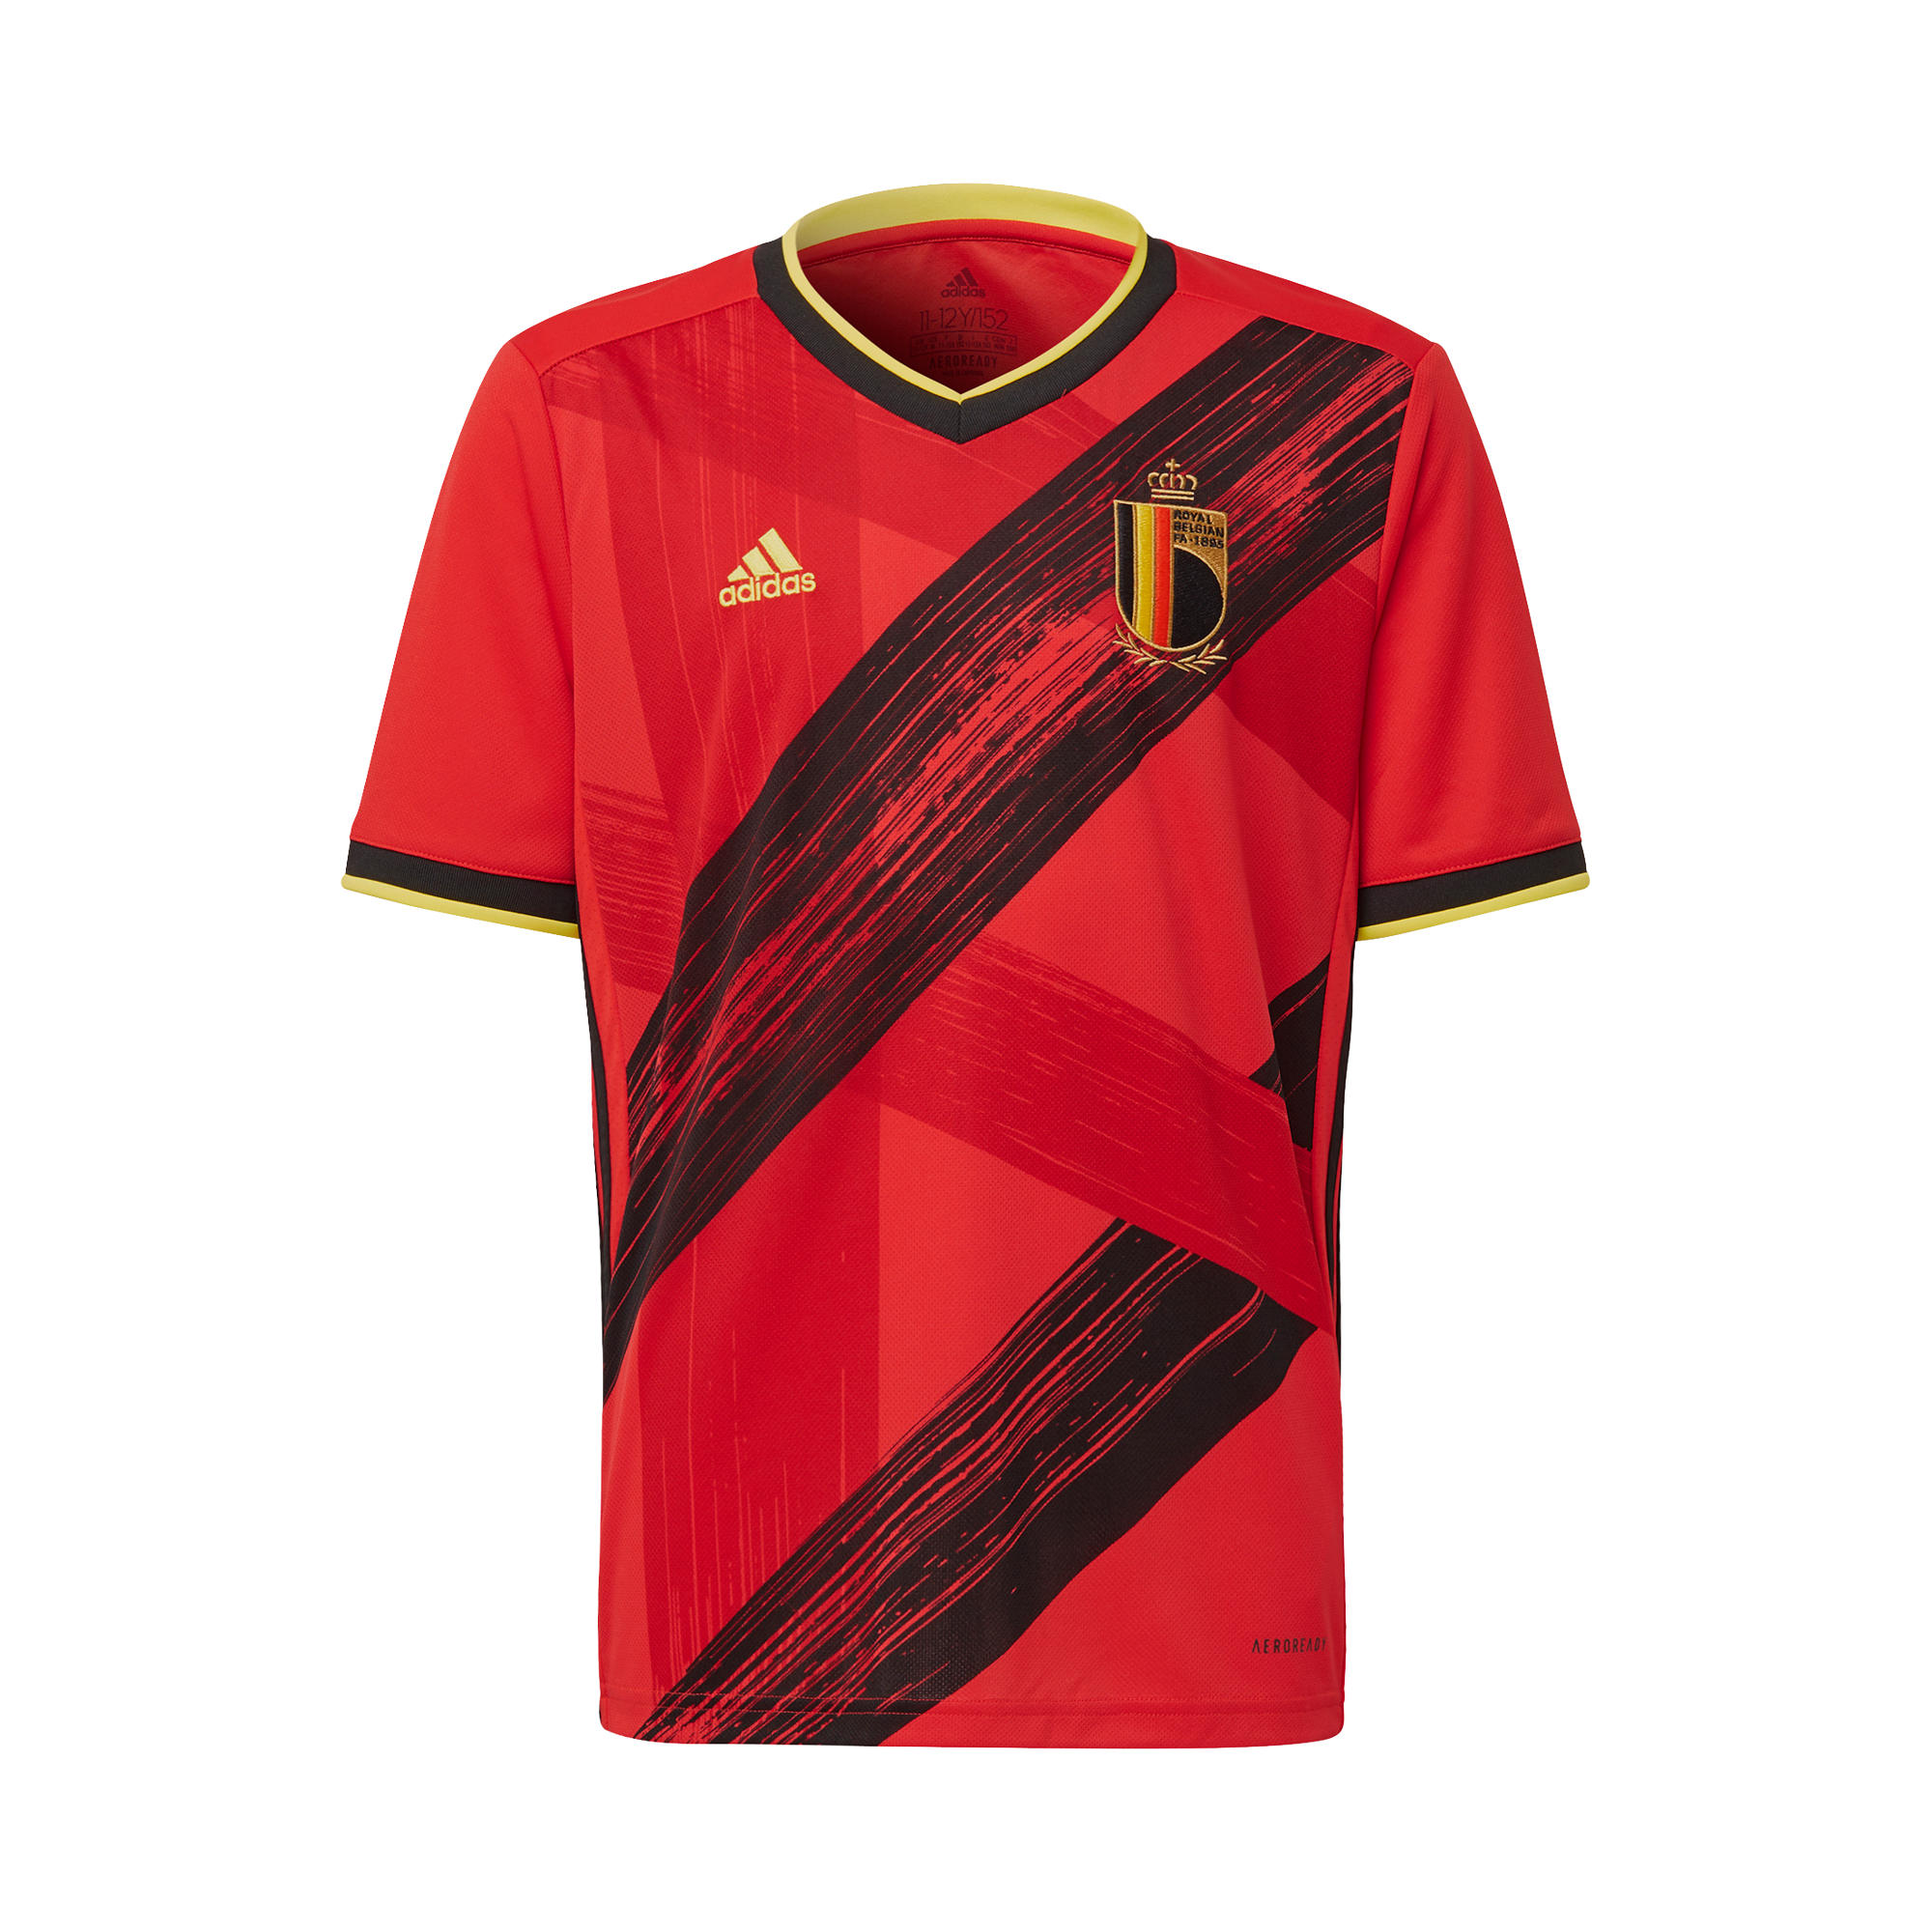 Photos - Football Kit Adidas Adult Replica Shirt  - Belgium Home  2020